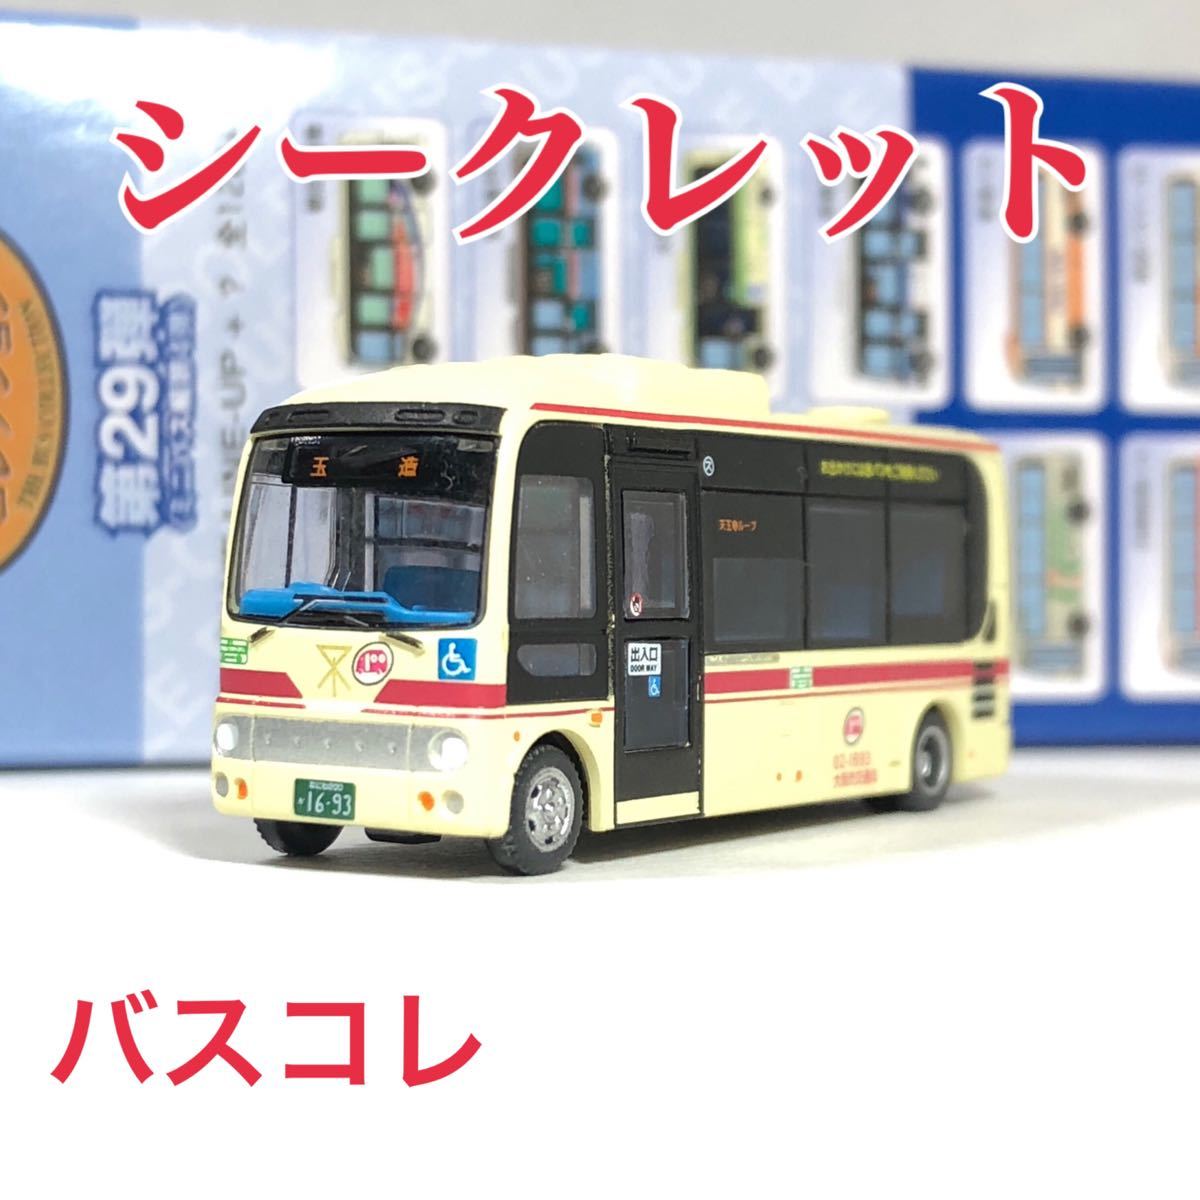 トミーテック ザ・バスコレクション【シークレット】バスコレ 第29弾 大阪市営バス 赤バス仕様